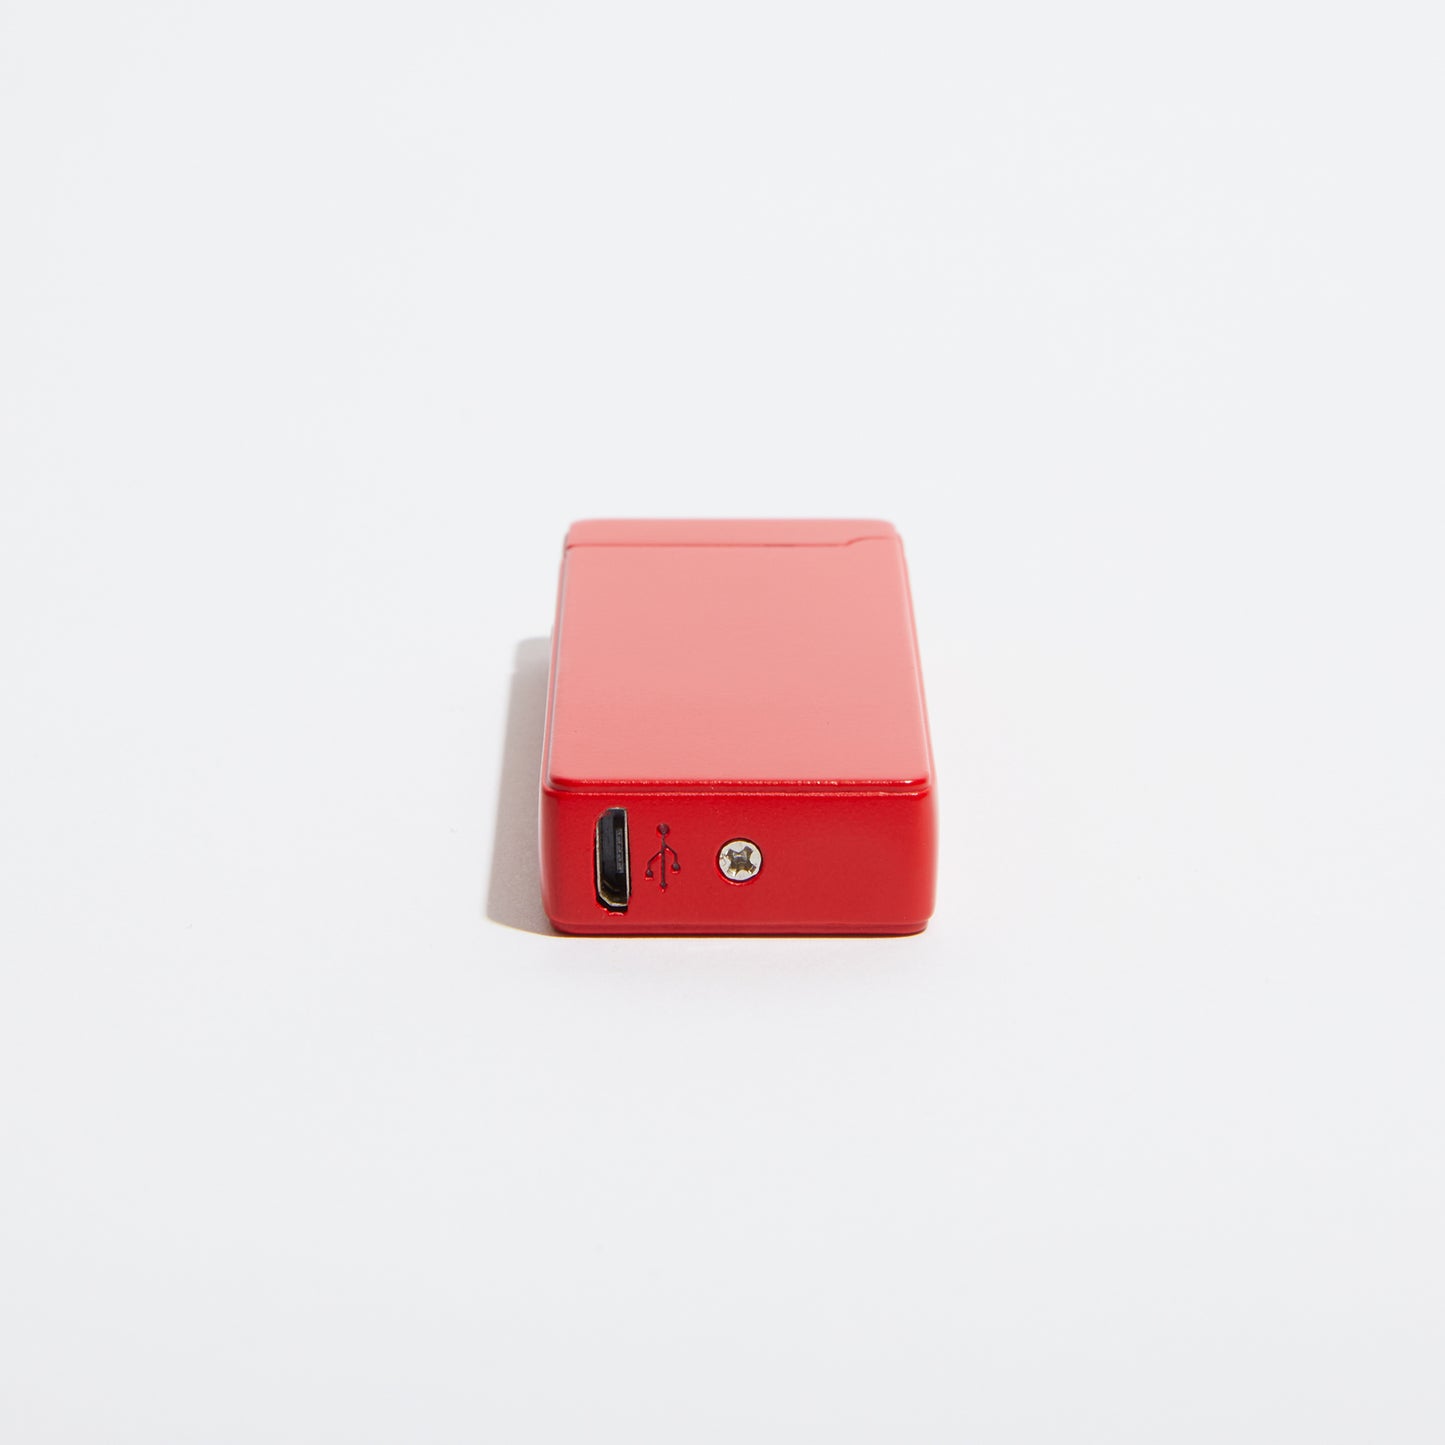 Pocket Electric Arc Lighter - Red